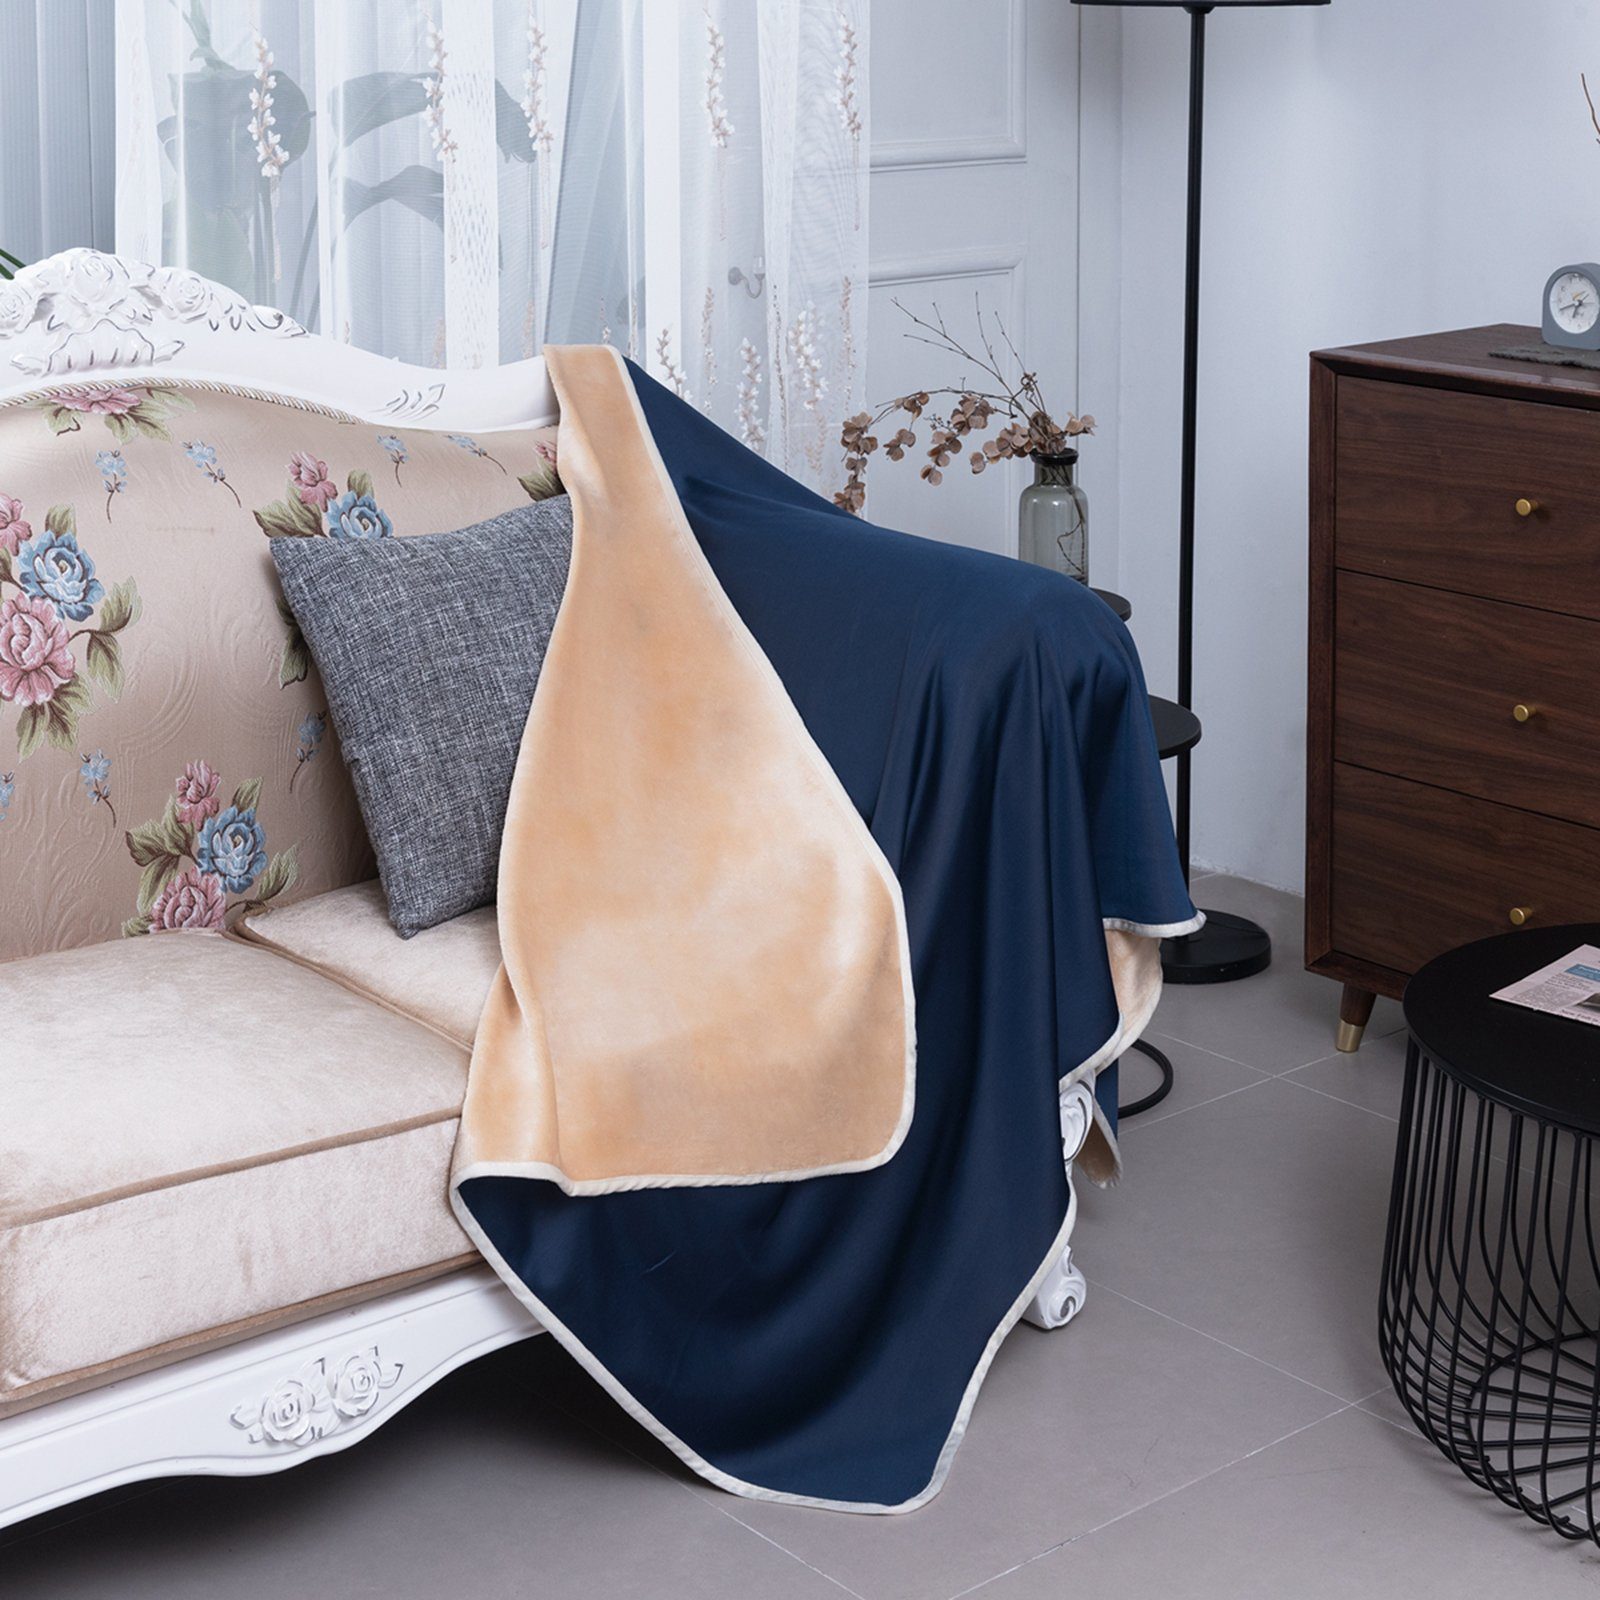 superweiches Sofa-Bettzeug, Sommerdecke doppelseitig, Flanell-Fleece; Baby-Decke für Tagesdecke kühlend, 152x127cm, Rosnek, Marineblau